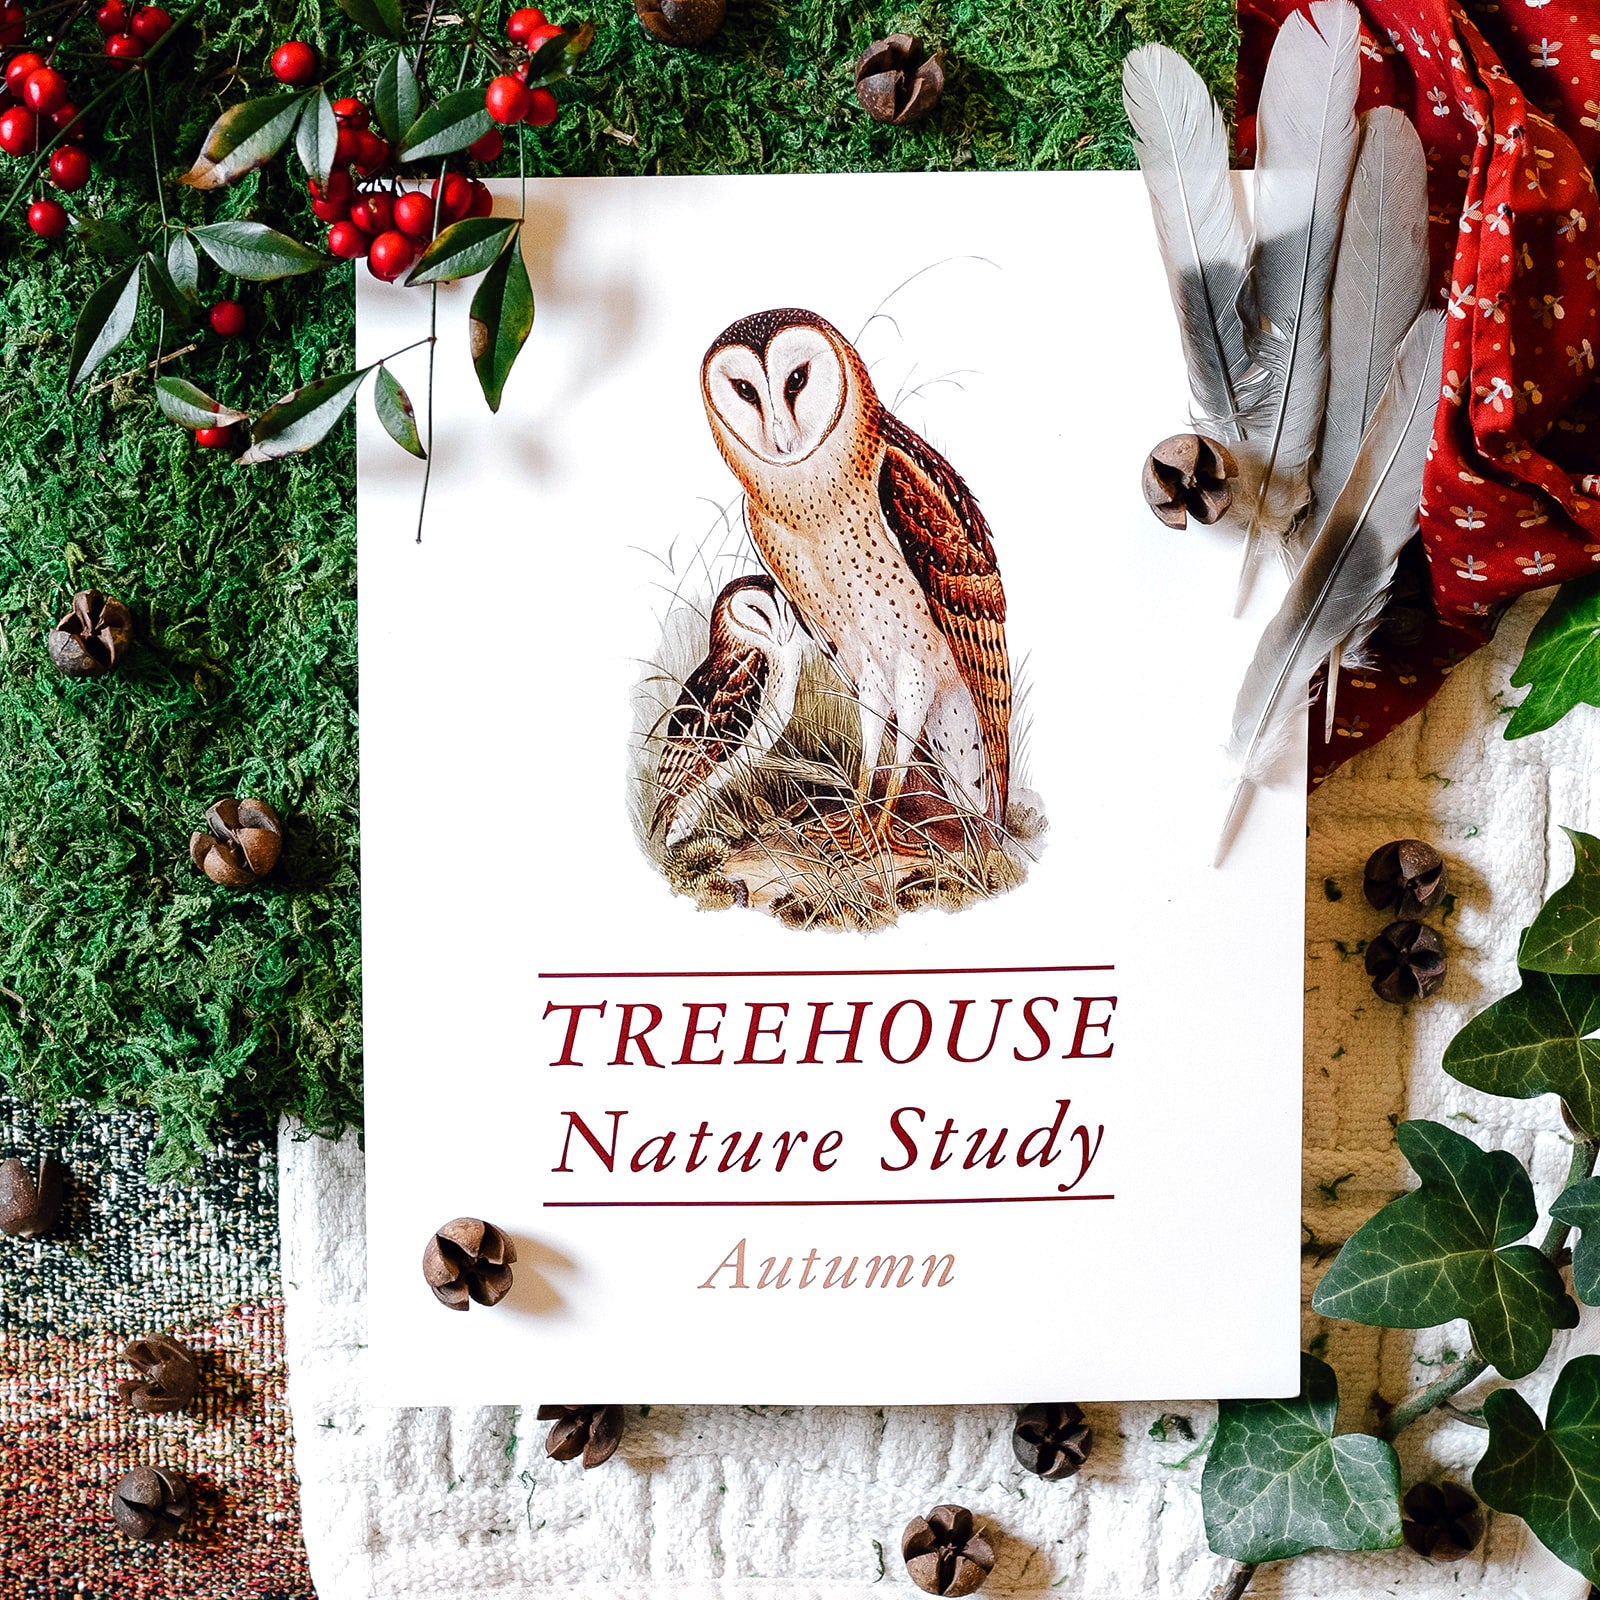 Treehouse Nature Study: Autumn